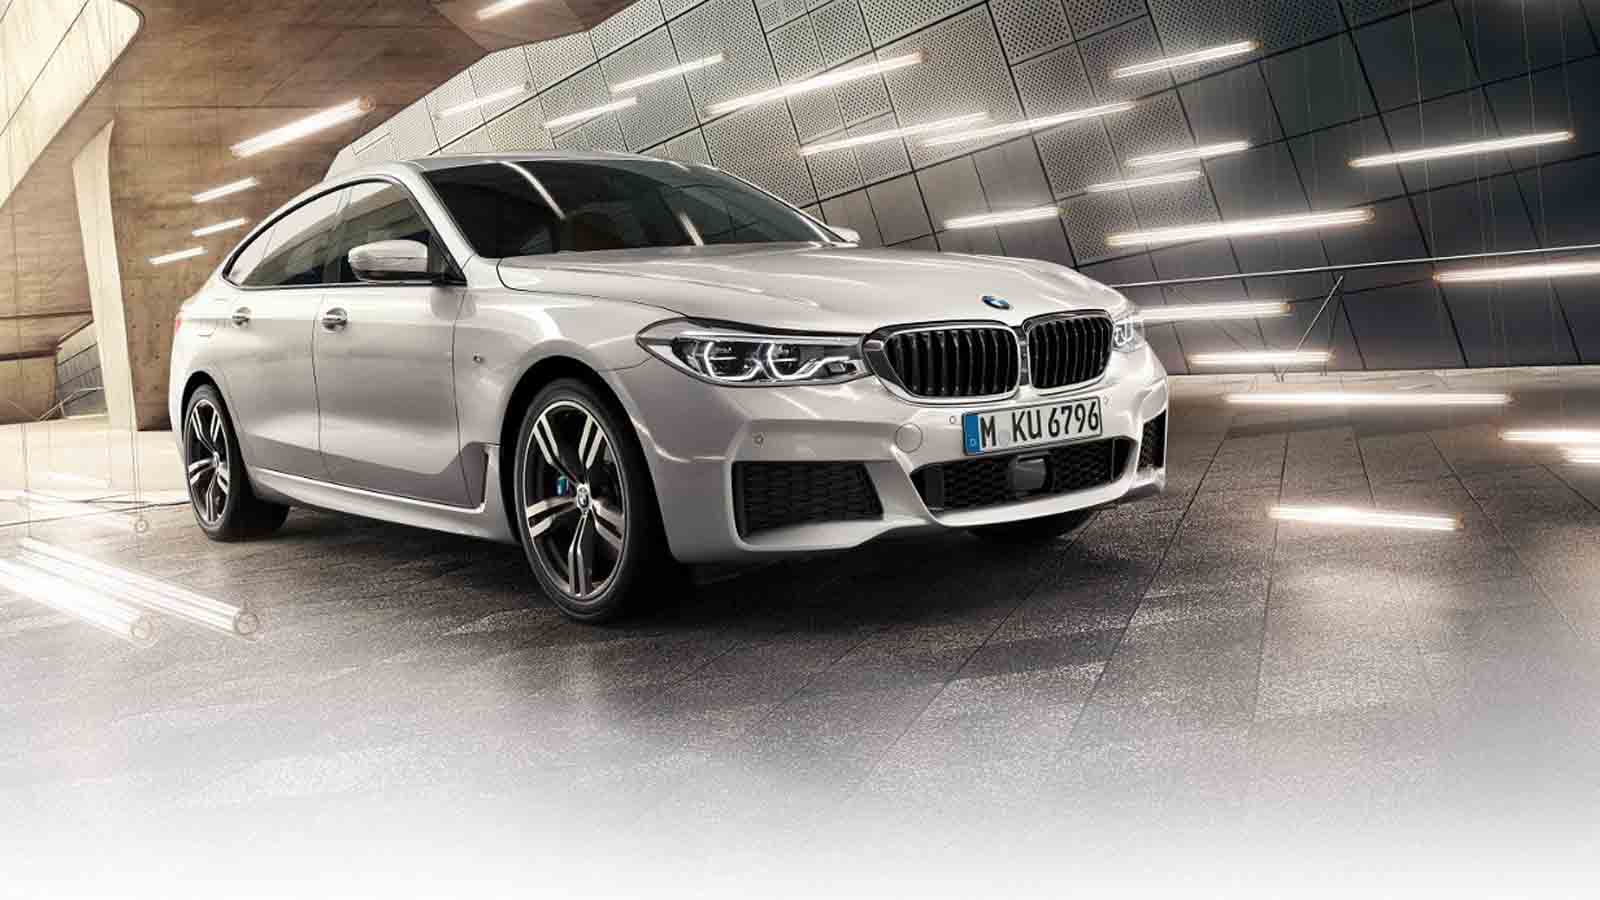 ข่าวรถยนต์:2020-2021 All New BMW 6-Series-Gran-Turismo เปิดตัวพร้อมราคาเริ่มต้นที่ THB 4,700,000 - 4,359,000บาท และตารางผ่อน 01